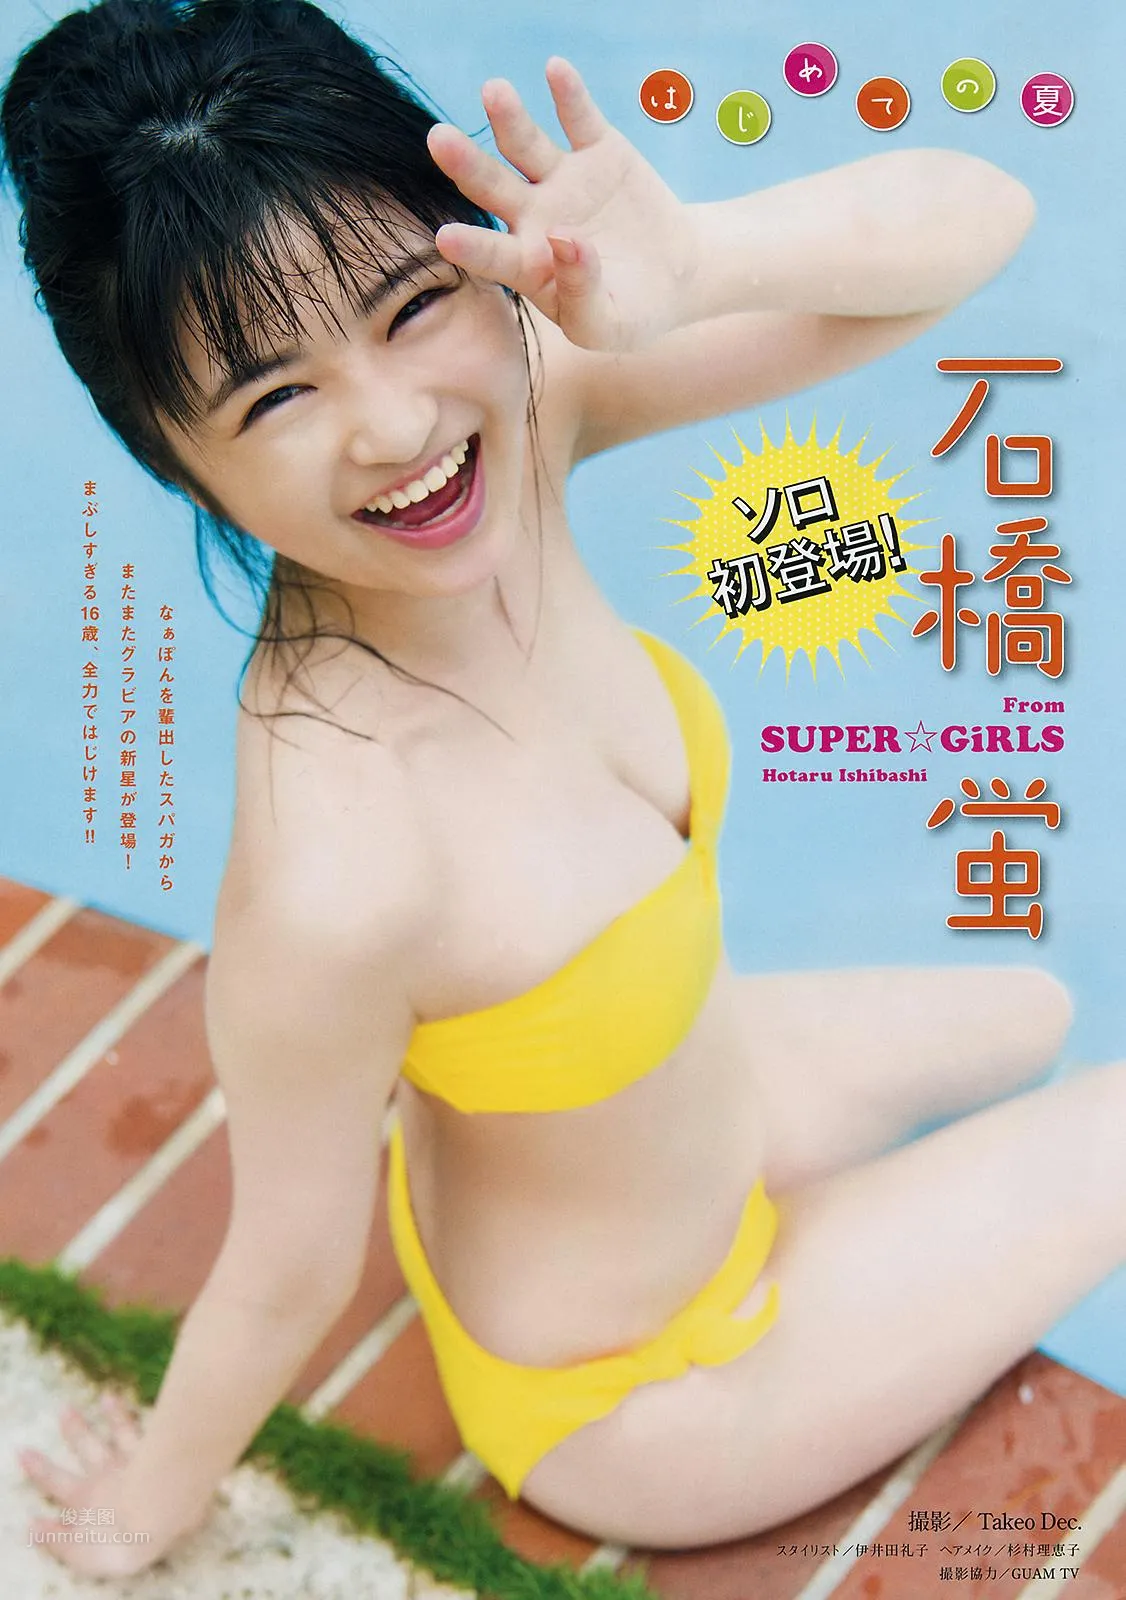 石橋蛍- Young Magazine / 2018.07.30_0